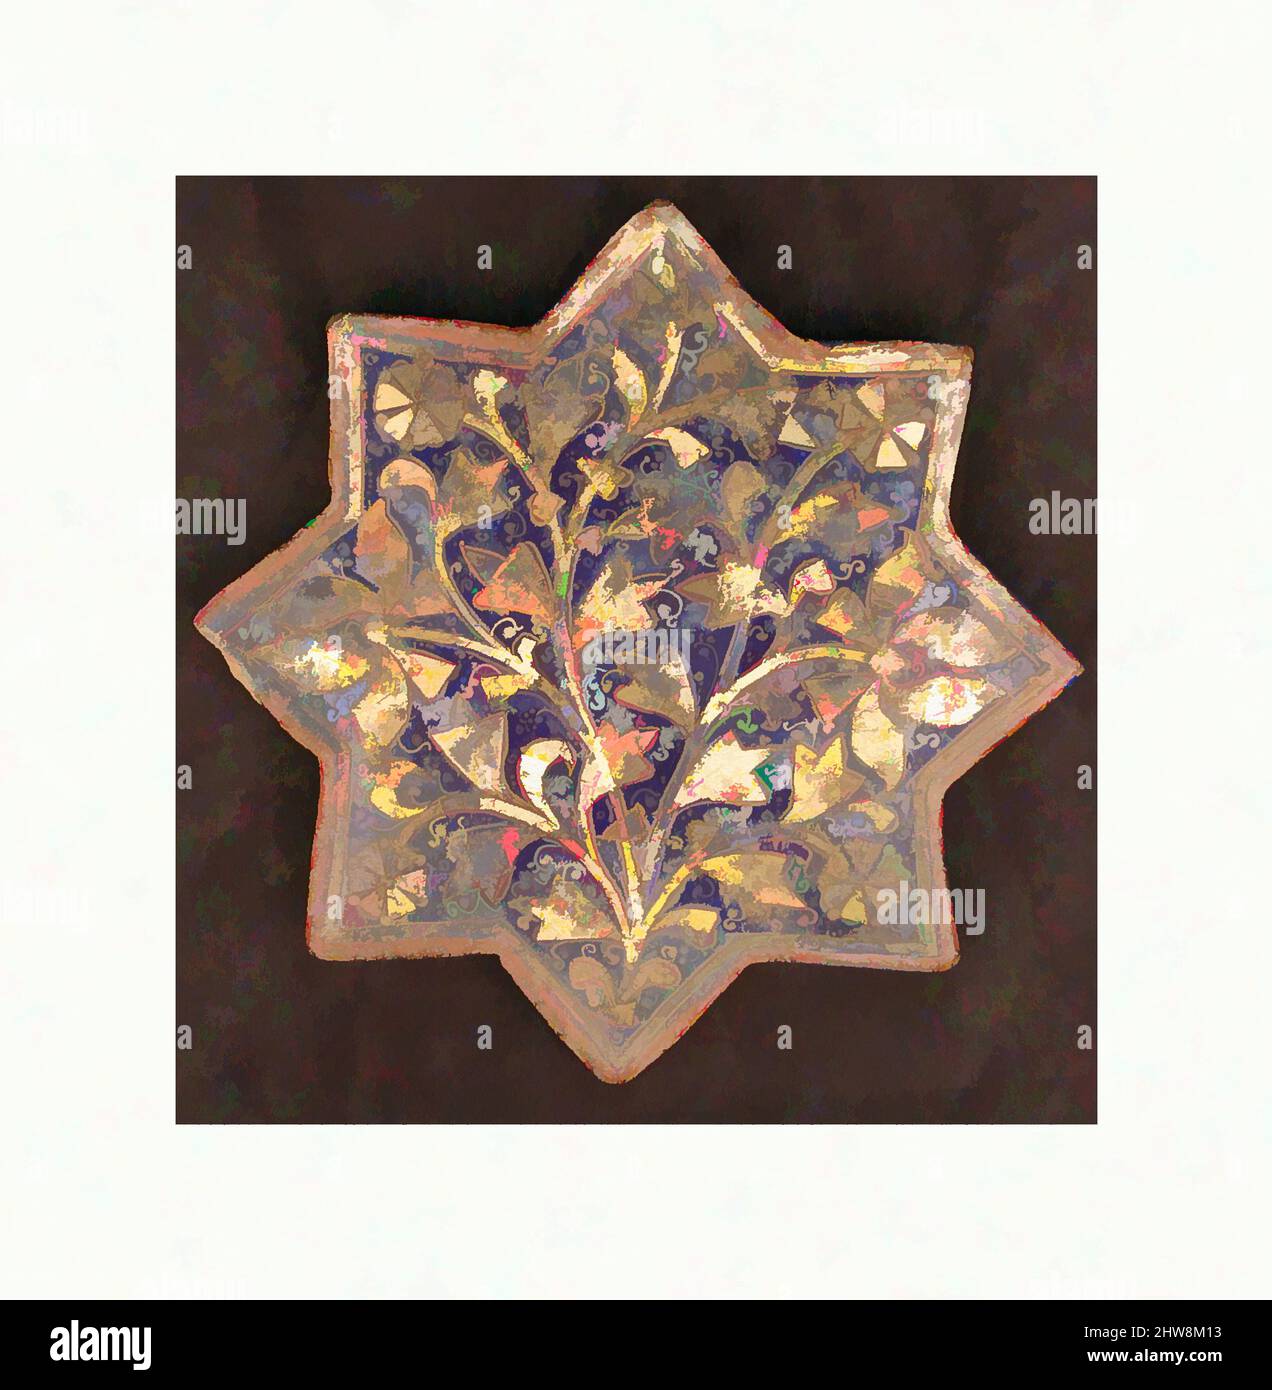 Art inspiré par trois tuiles avec 'Lajvardina' Glaze, deuxième moitié du 13th–14th siècle, attribué à l'Iran, Stonepaste; moulé, peint par surglaçure, Et doré (lajvardina), H. 7 7/8 po. (20 cm), carreaux de céramique, ce carrelage à huit pointes a été décoré à l'aide d'une technique appelée lajvardina, a, œuvres classiques modernisées par Artotop avec une touche de modernité. Formes, couleur et valeur, impact visuel accrocheur sur l'art émotions par la liberté d'œuvres d'art d'une manière contemporaine. Un message intemporel qui cherche une nouvelle direction créative. Artistes qui se tournent vers le support numérique et créent le NFT Artotop Banque D'Images